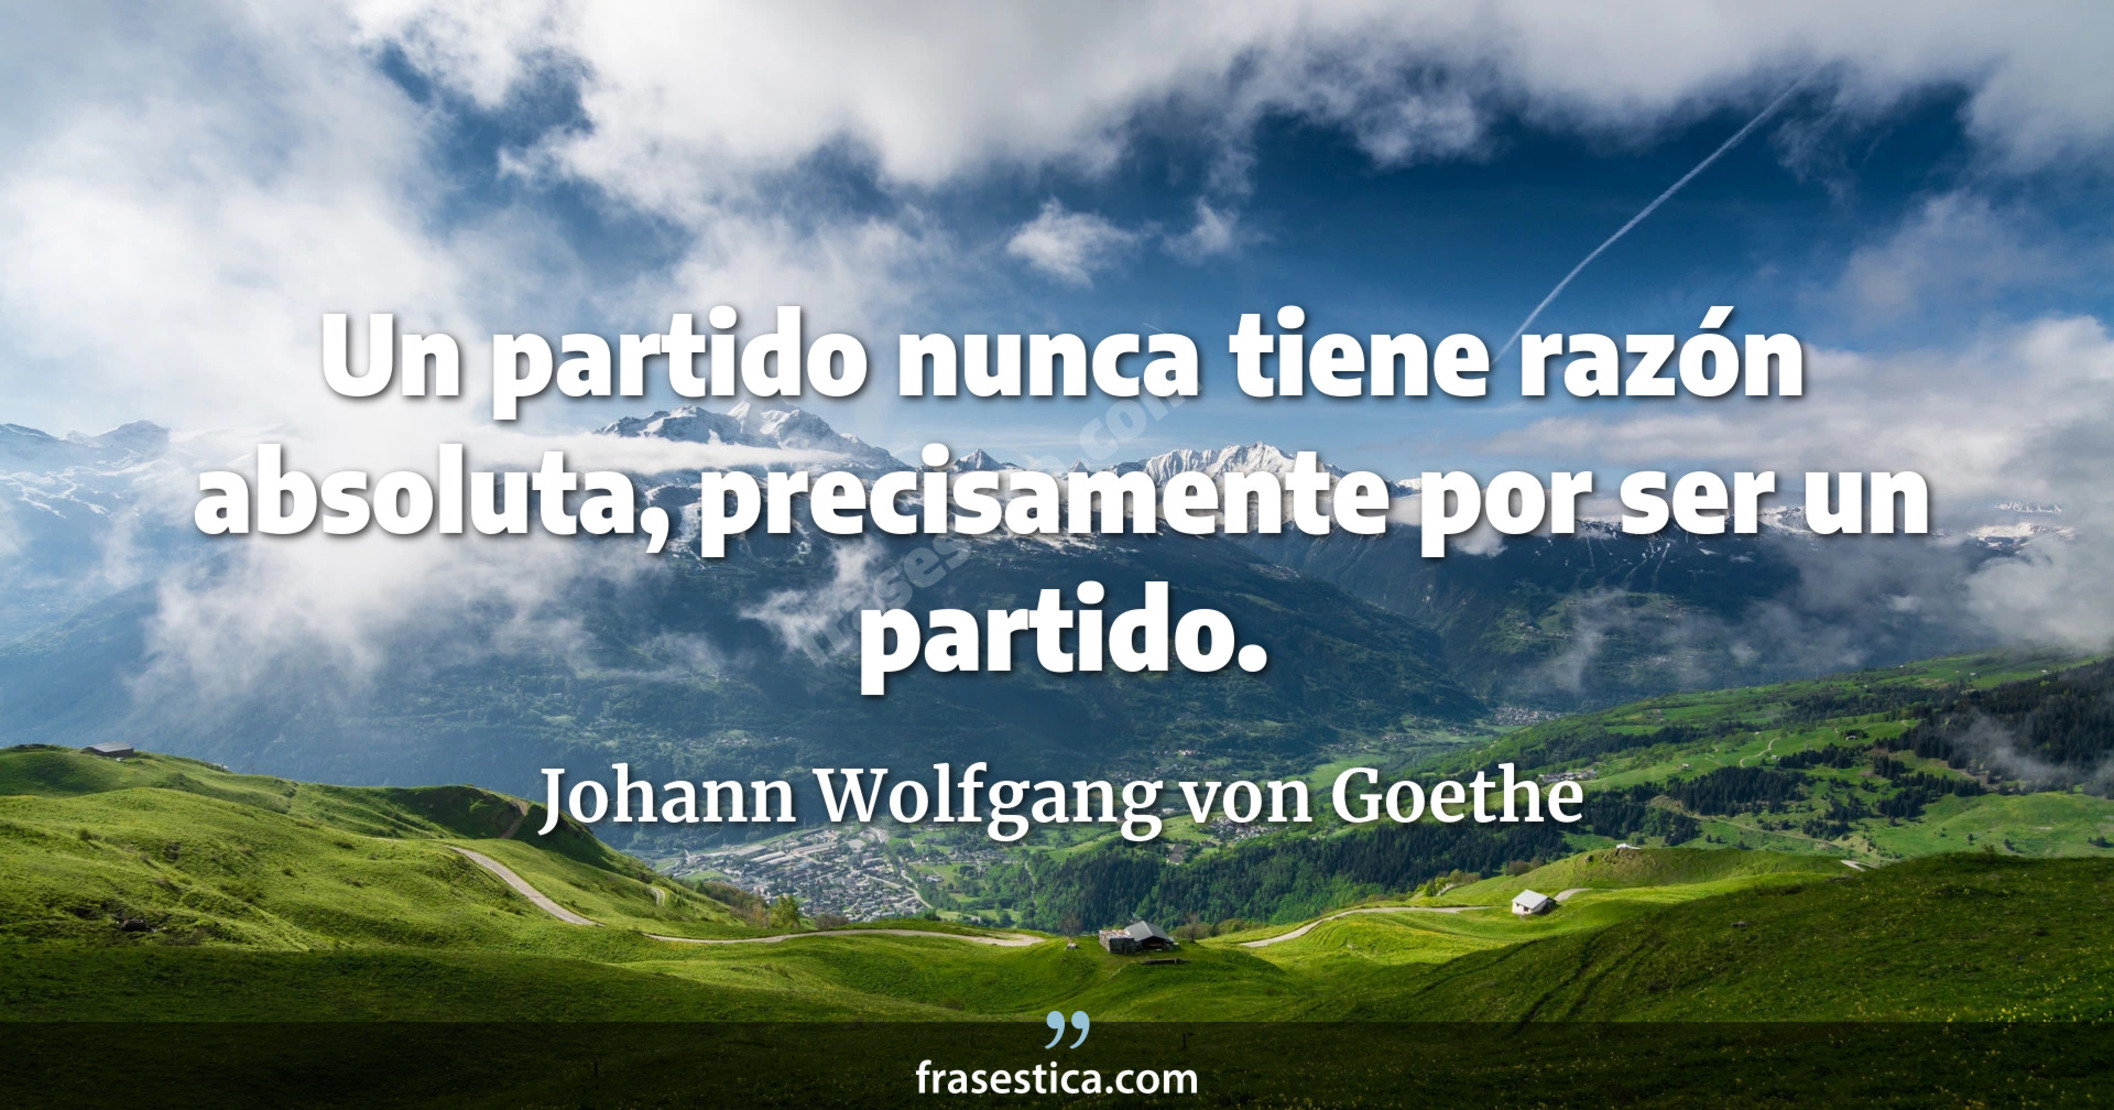 Un partido nunca tiene razón absoluta, precisamente por ser un partido. - Johann Wolfgang von Goethe